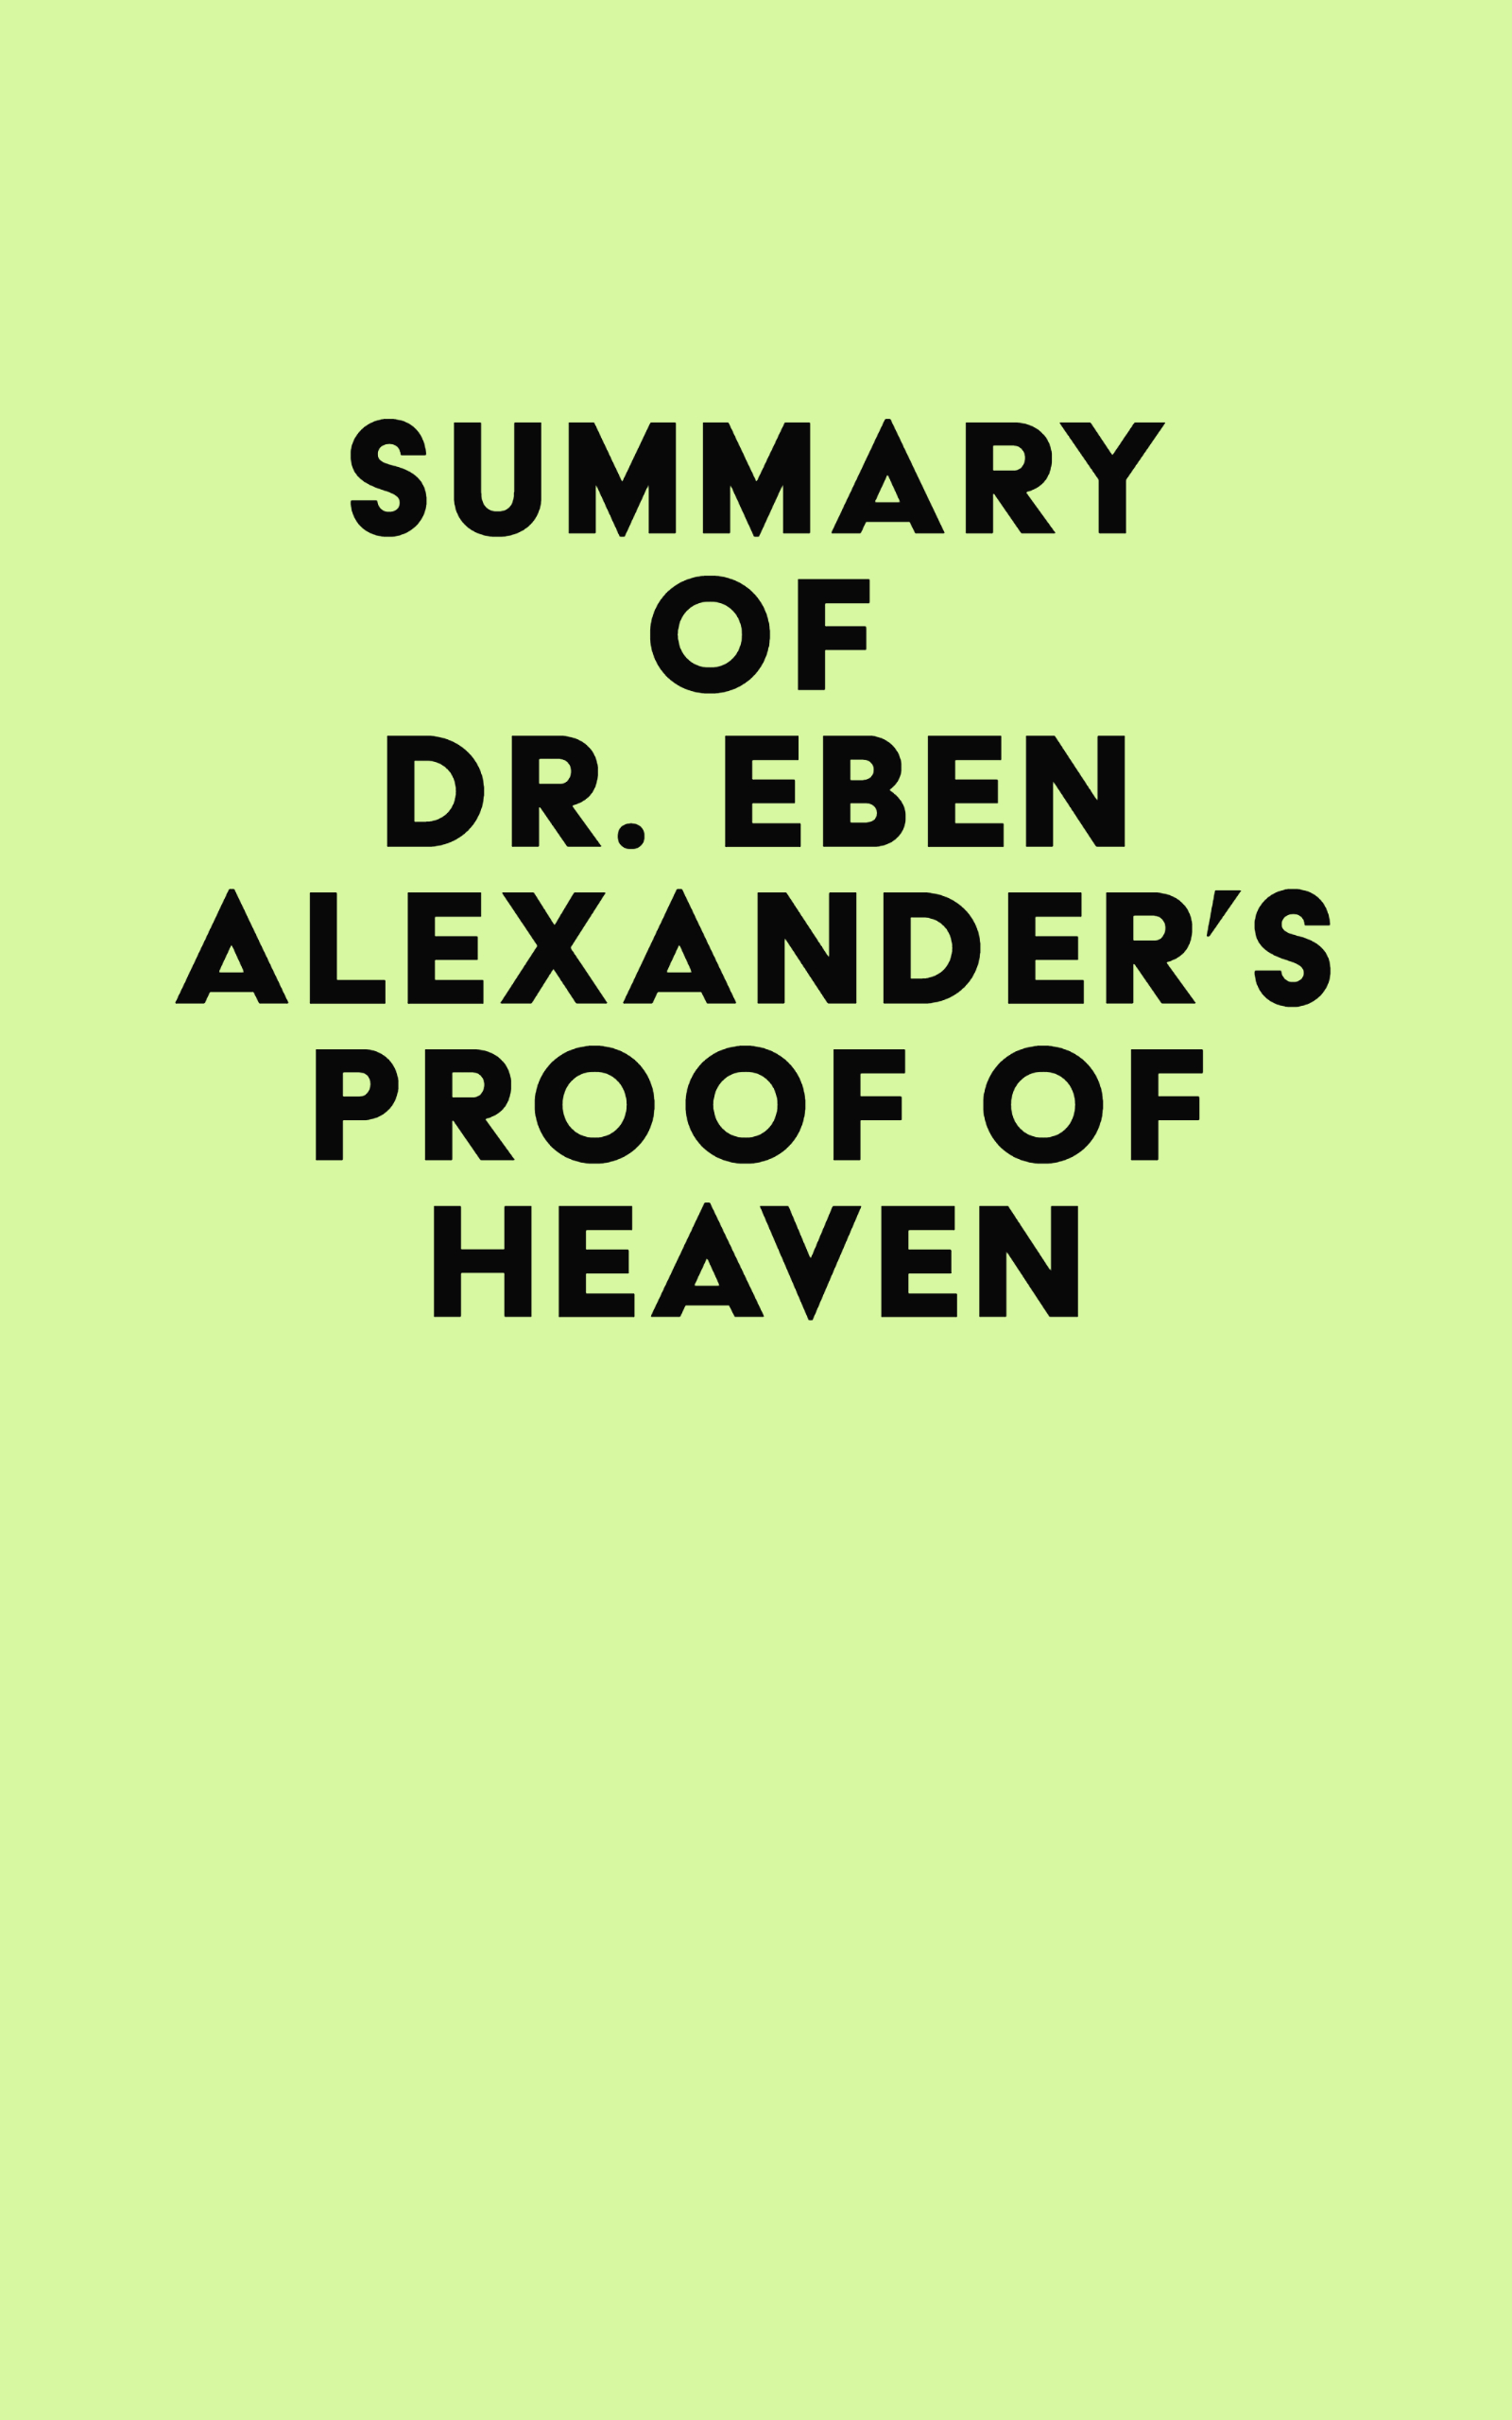 Summary of Dr. Eben Alexander's Proof of Heaven